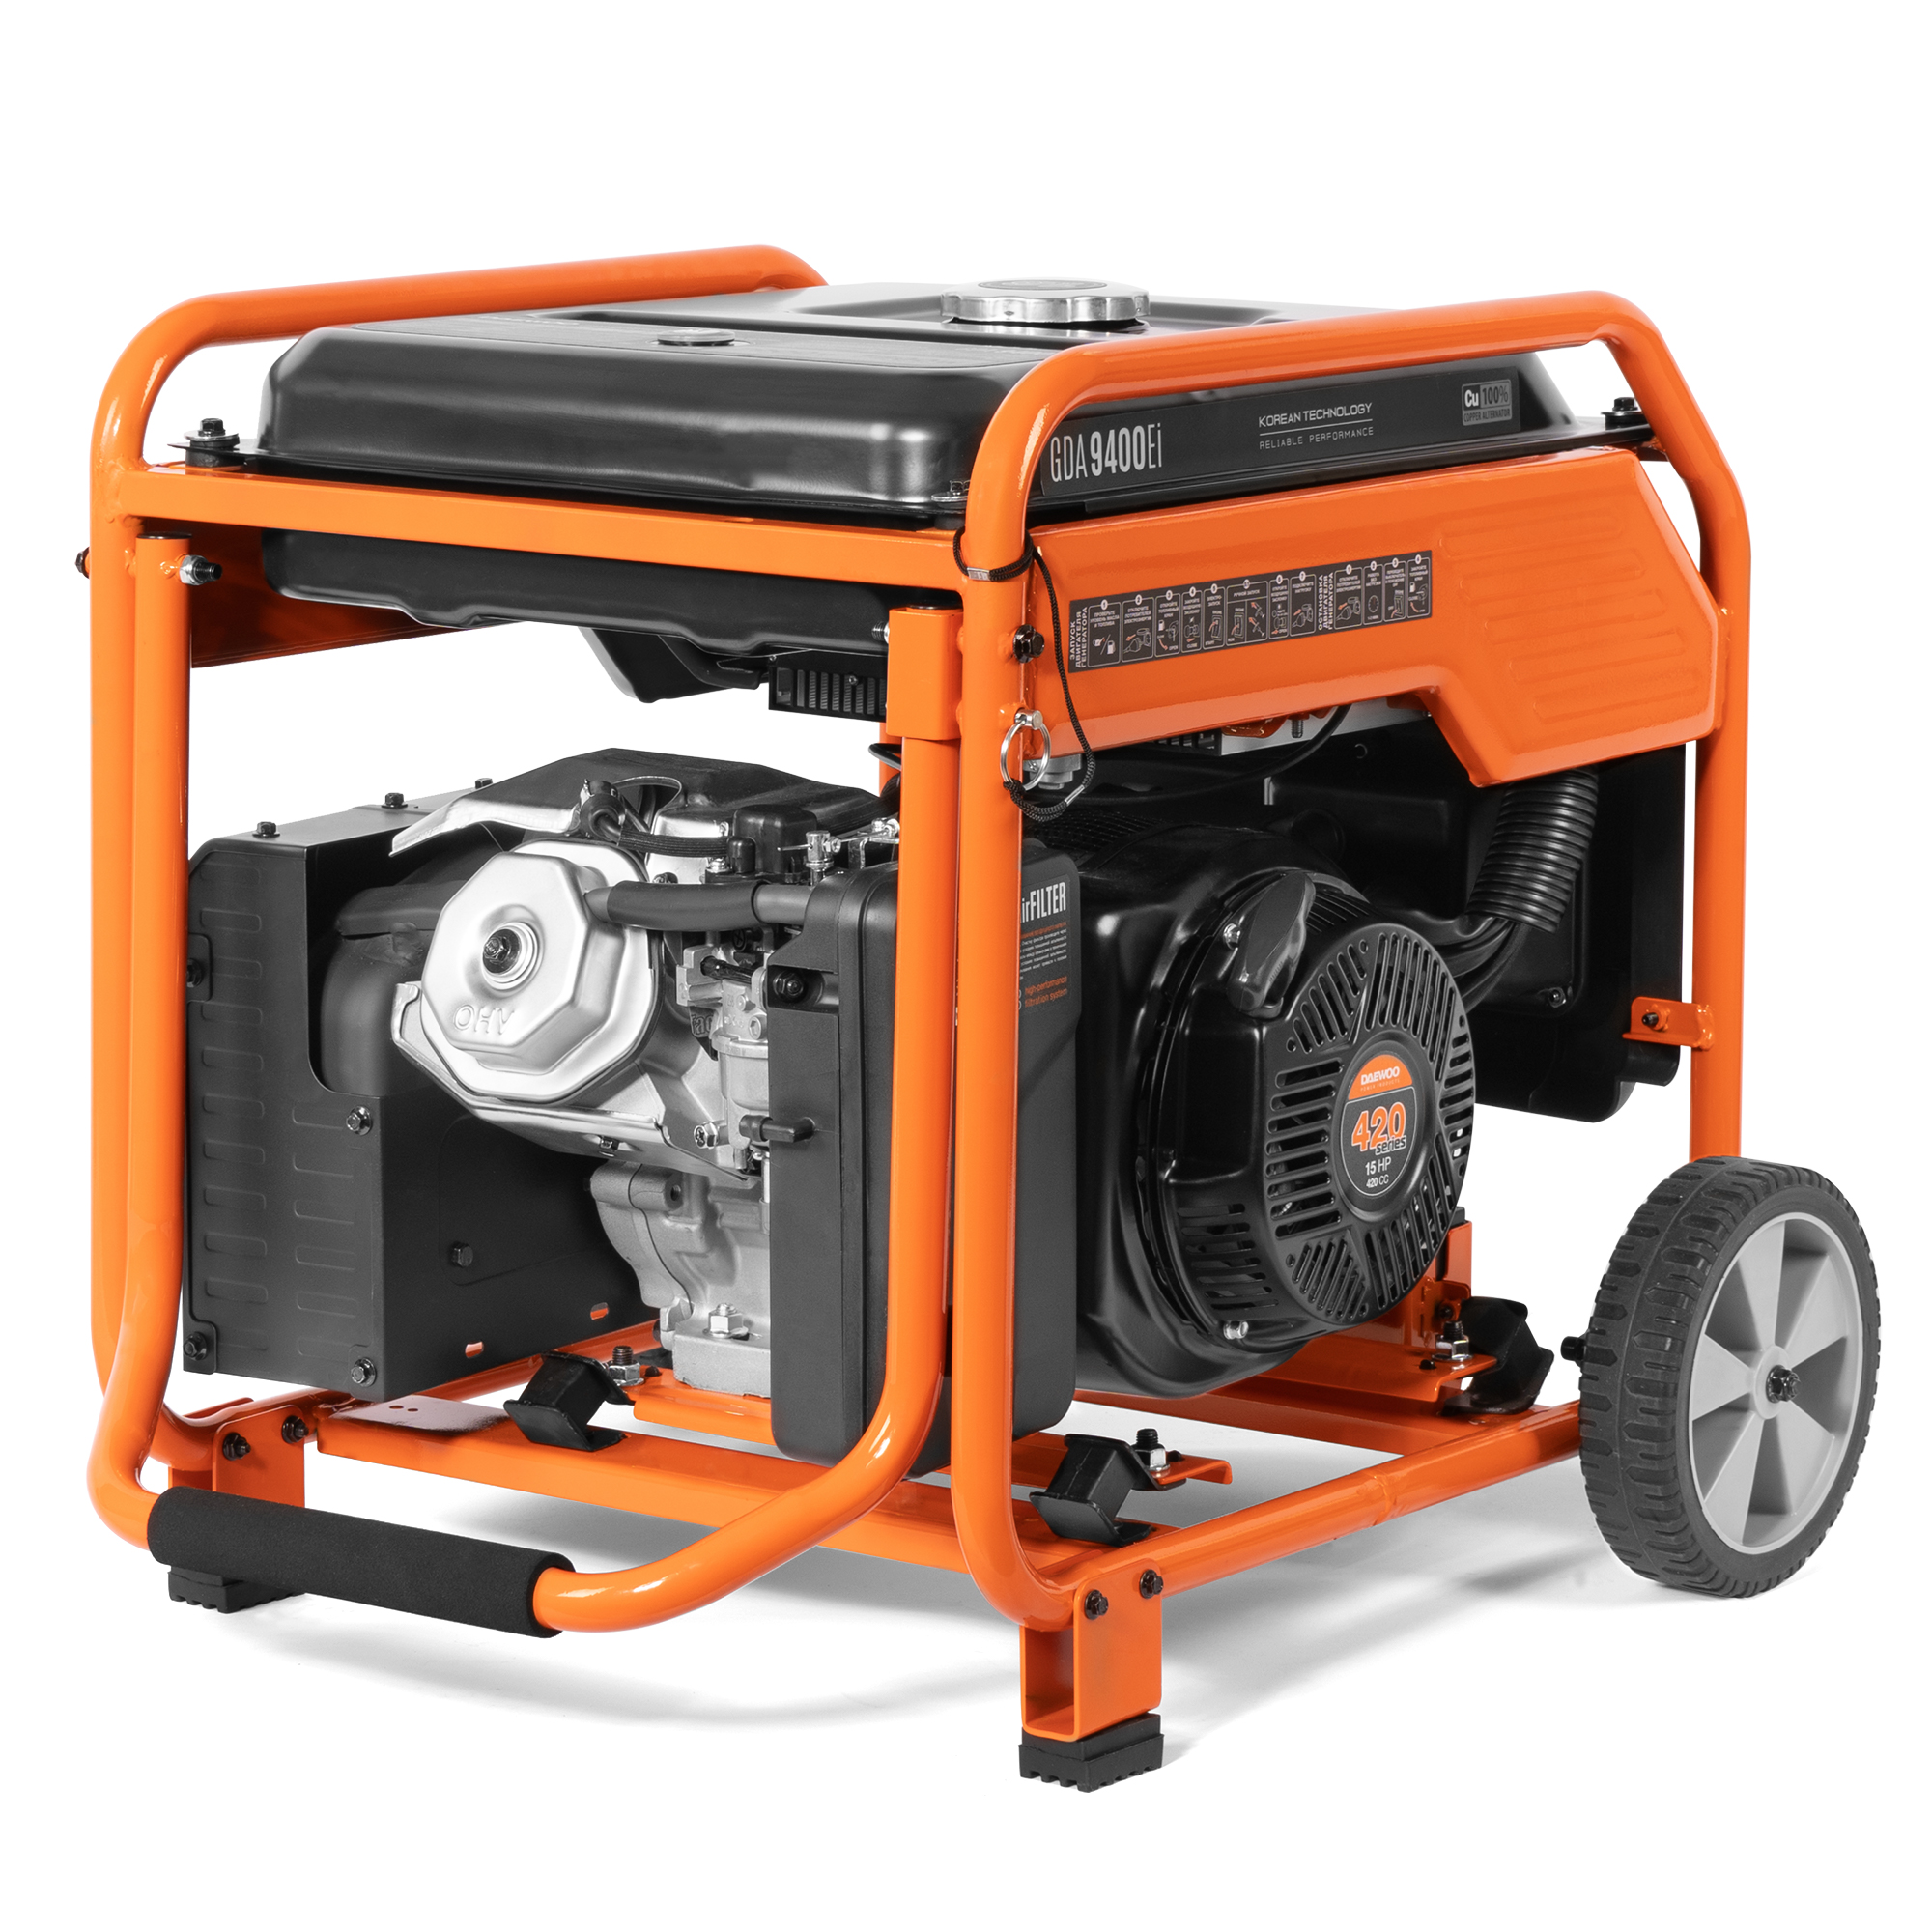 Генератор бензиновый DAEWOO инверторный (GDA 9400EI), цвет оранжевый series 420 - фото 6